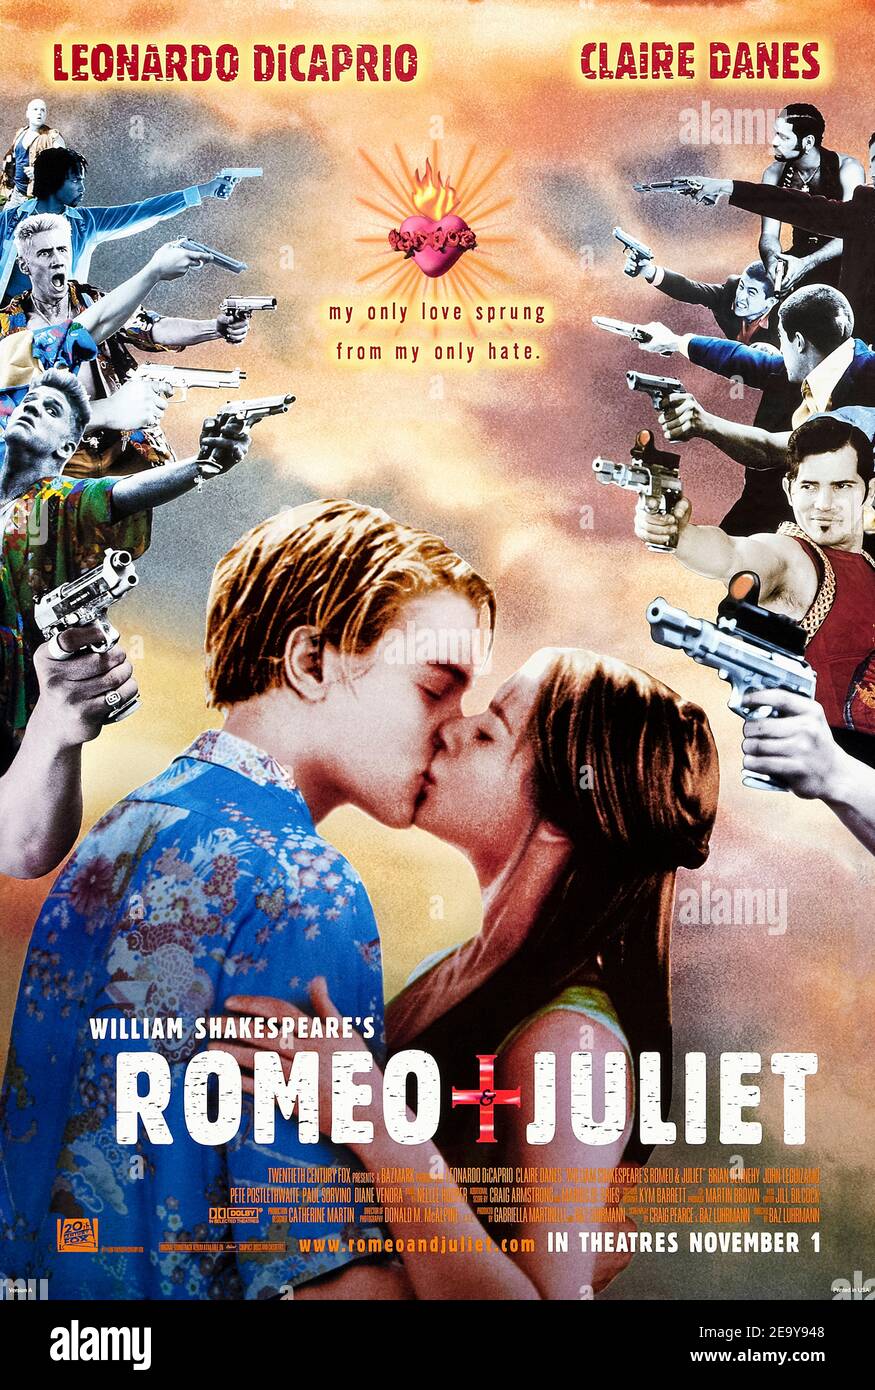 Romeo + Juliet (1996) regia di Baz Luhrmann con Leonardo DiCaprio, Claire Danes e John Leguizamo. Adattamento fantastico e fantastico del gioco di Shakespeare ad una Verona moderna, pur mantenendo la lingua originale. Foto Stock